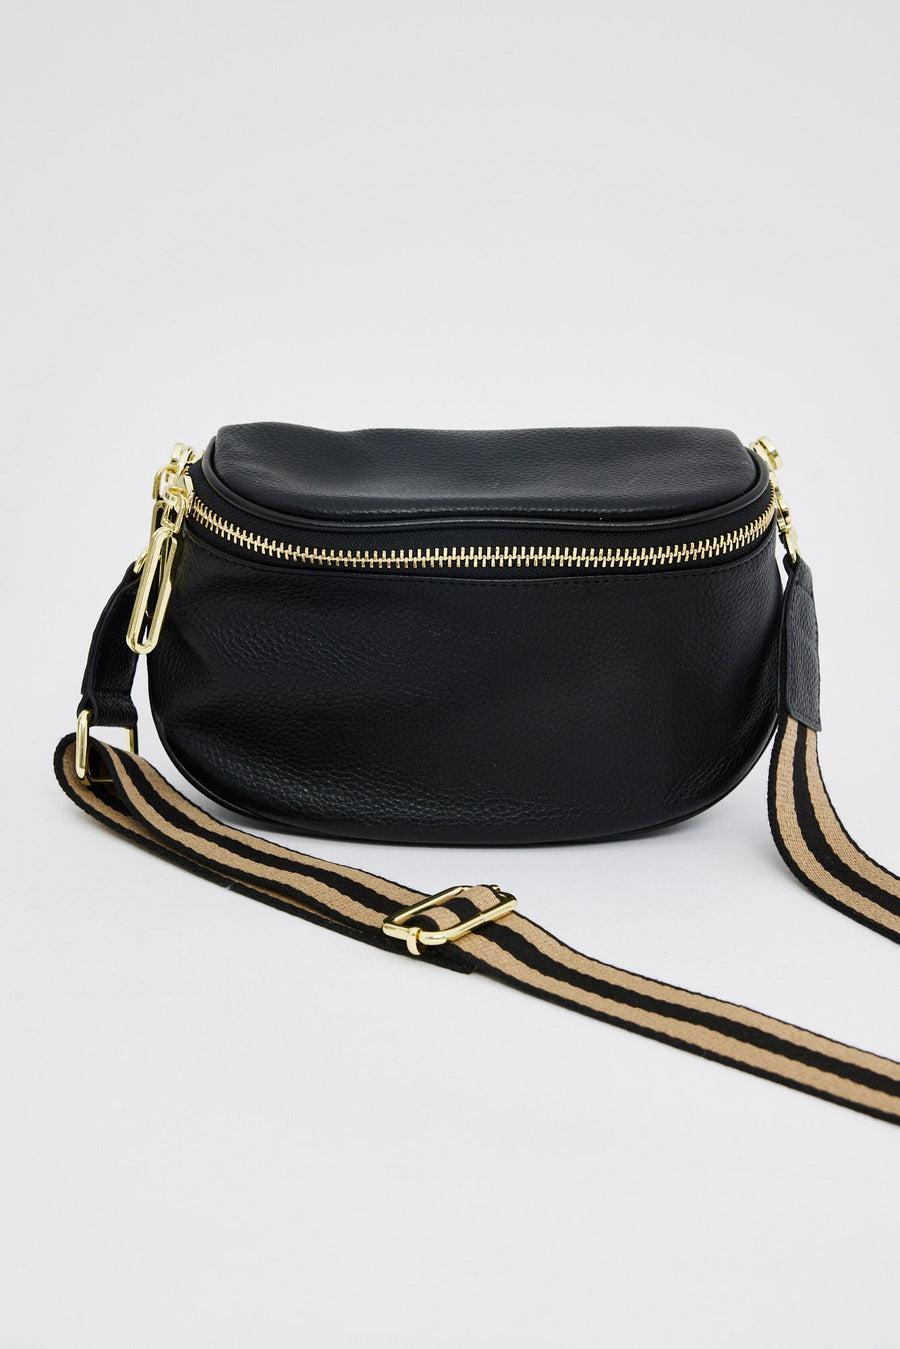 Kensington Bag - Black + Tan Stripe Strap